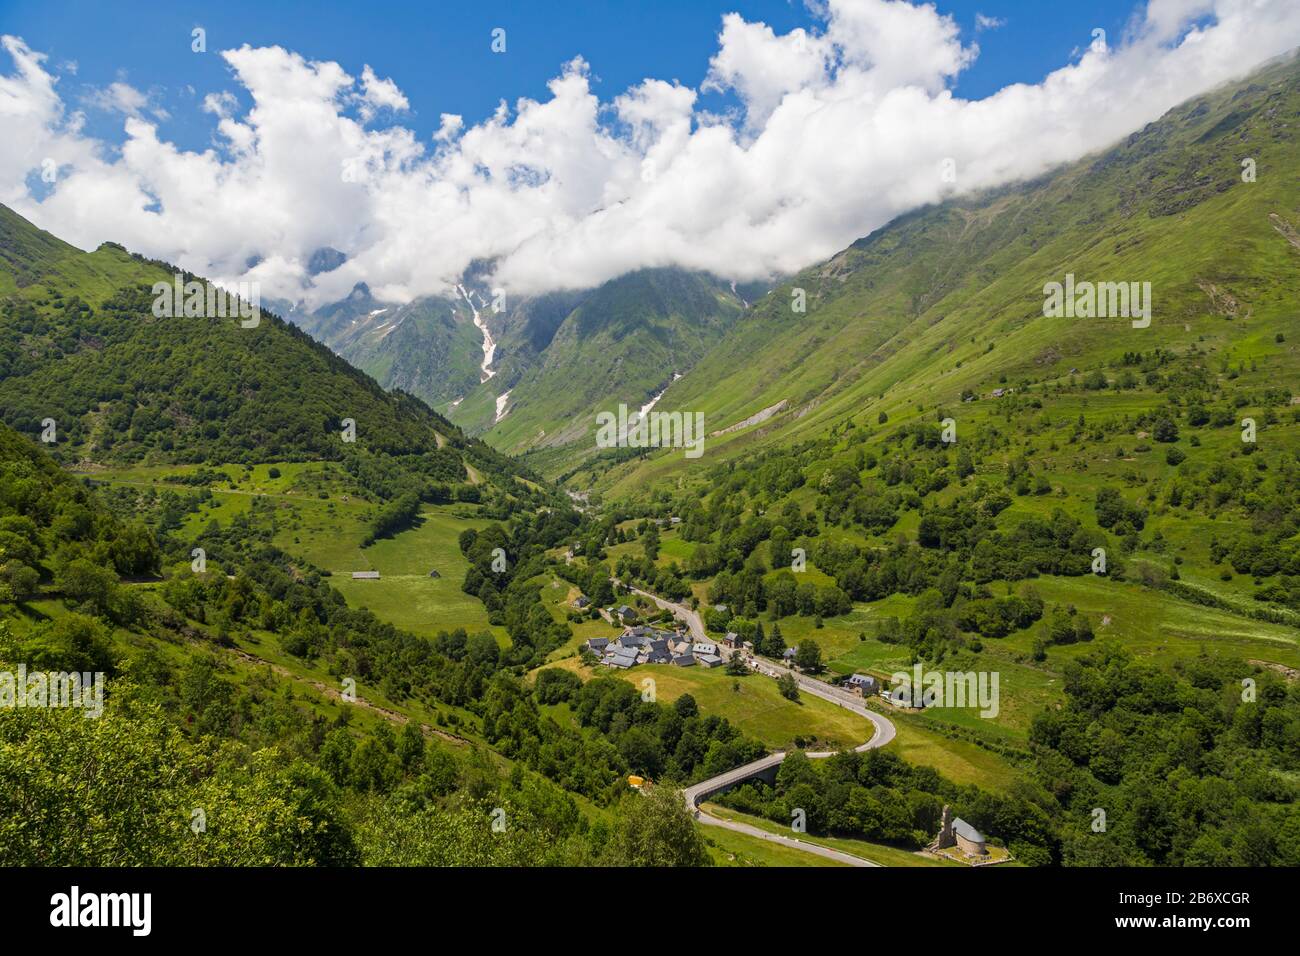 Villaggio Di Le Plan, Alta Garonna, Occitanie, Francia. La D118 conduce attraverso il villaggio e al Parco Nazionale dei Pirenei montagnosi oltre. Foto Stock